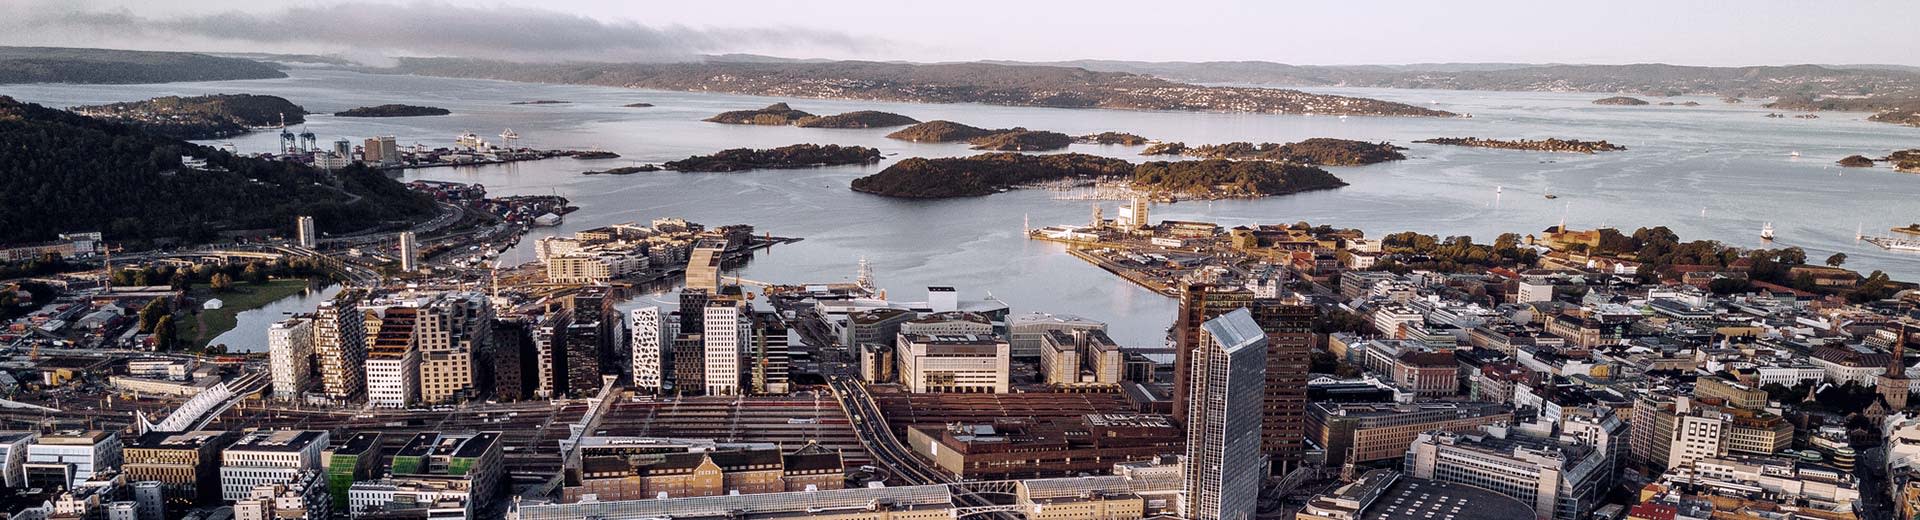 Die hohen Gebäude von Oslo übersehen die Küste Norwegens an einem kalten und klaren Tag.